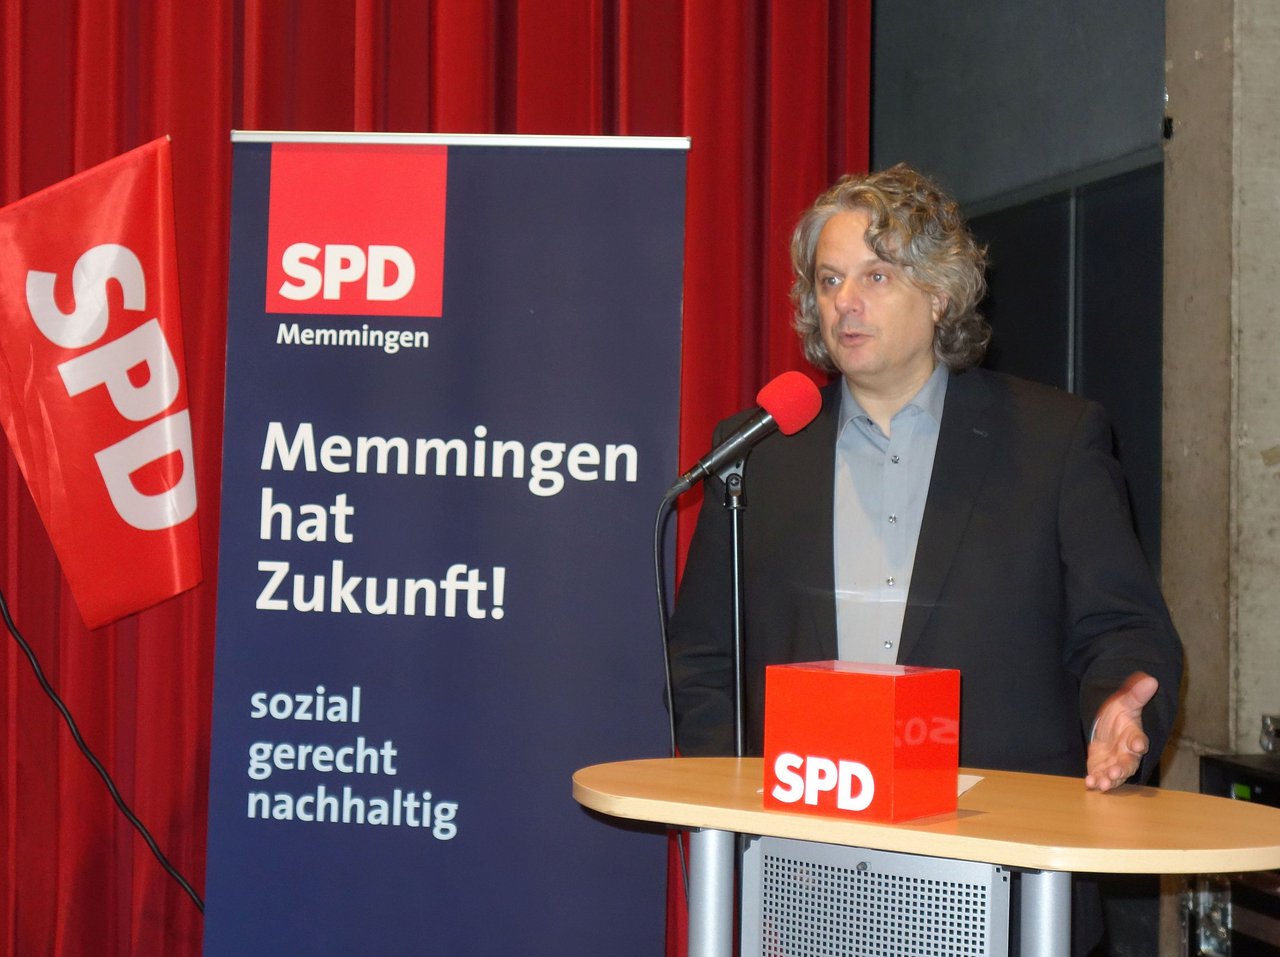 SPD Dreikönigsfrühschoppen 2019